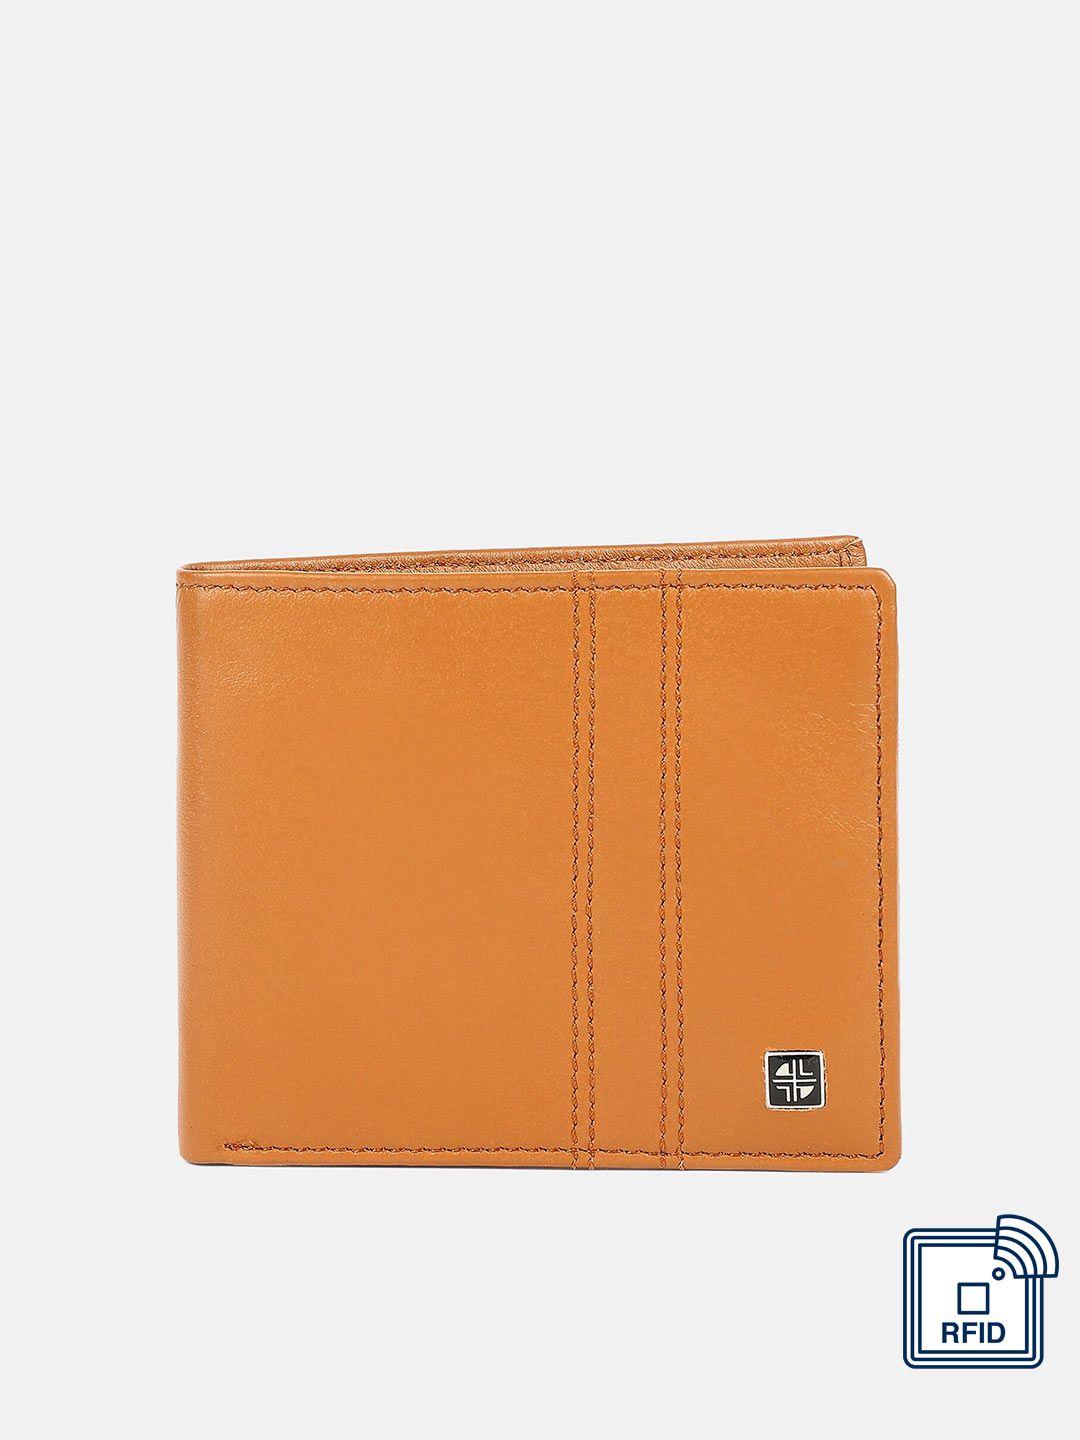 carlton london men tan leather two fold wallet